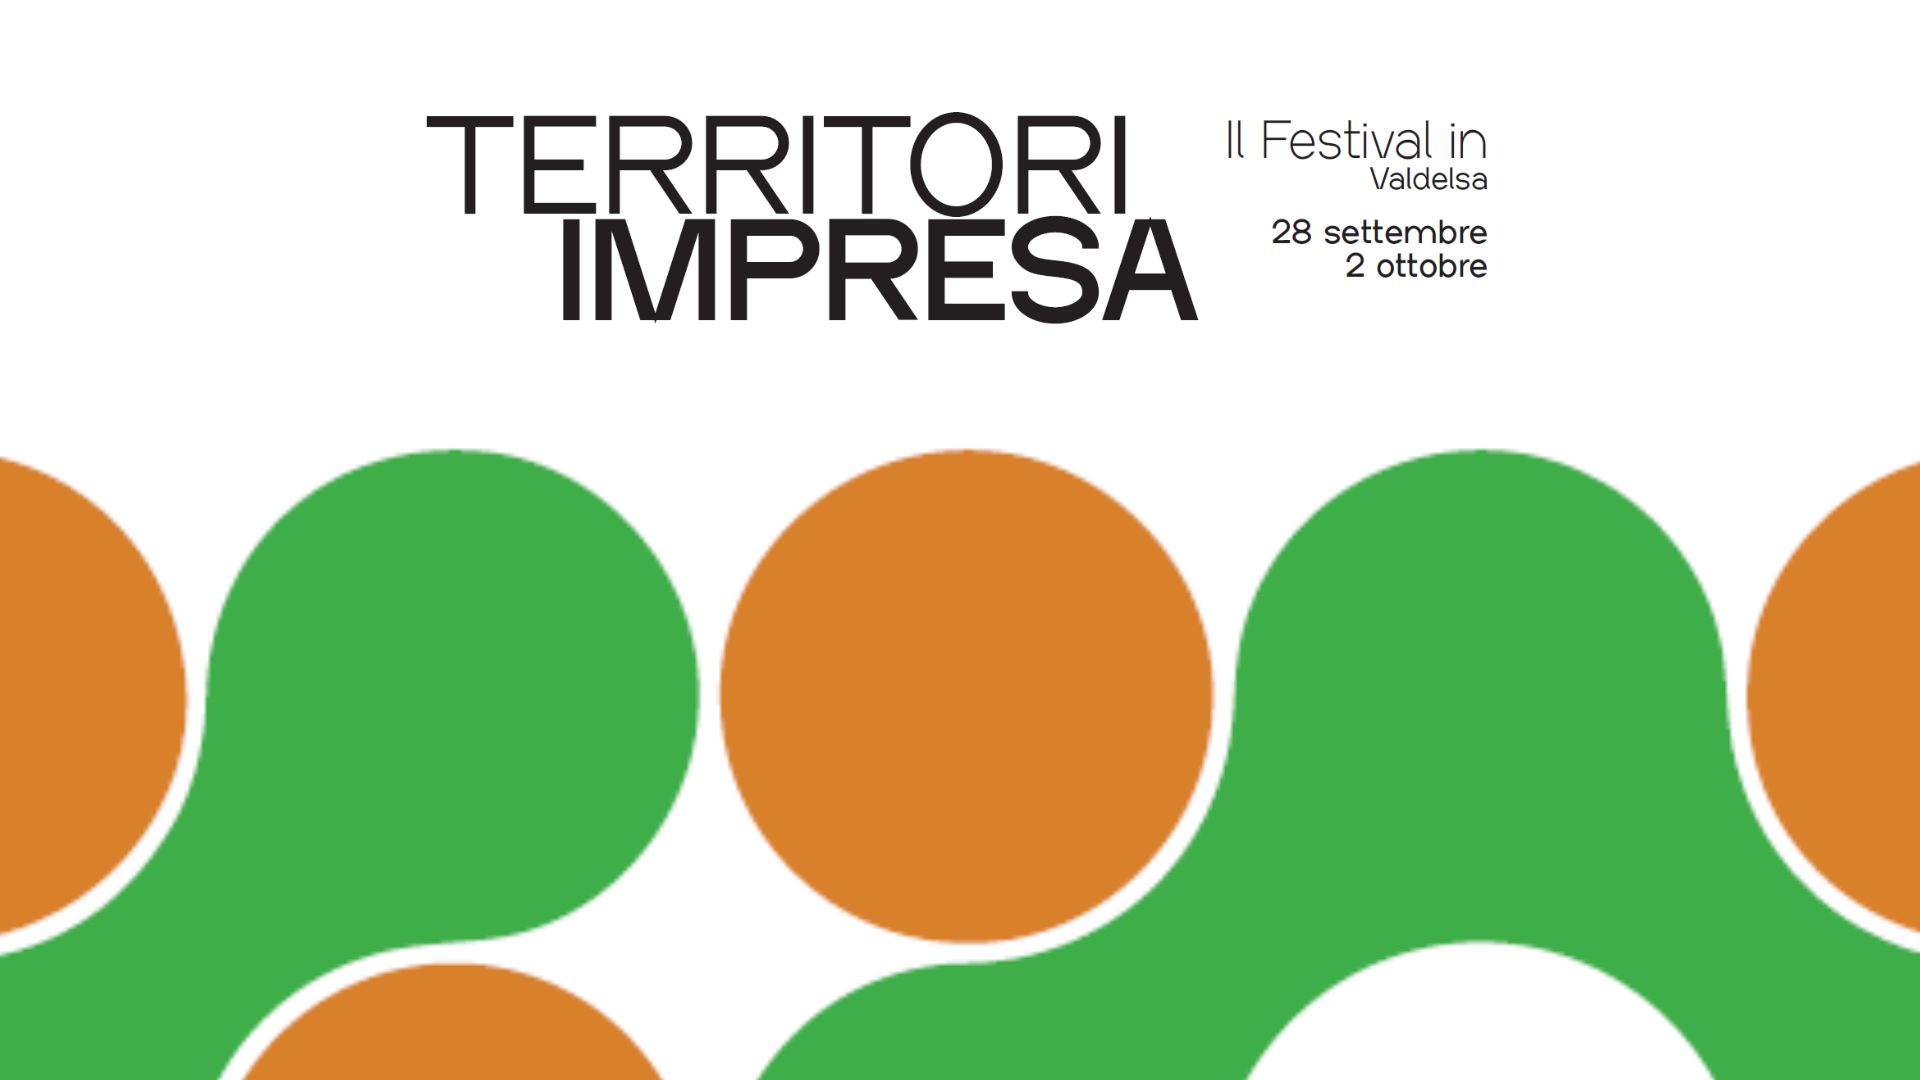 Economia, apresentação do Festival dos Territórios Empresariais de Valdelsa no dia 26 de setembro